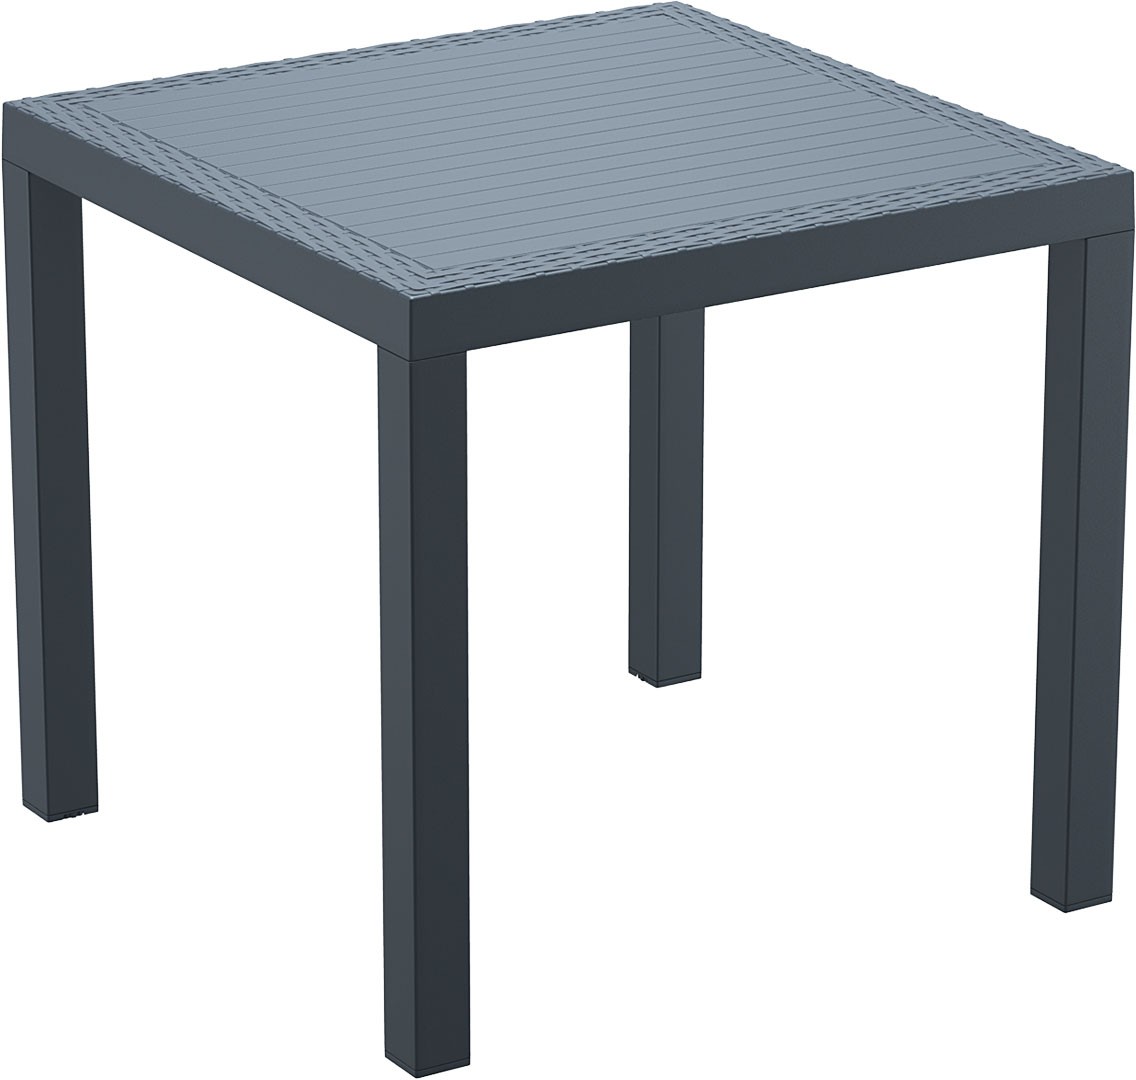 Квадратные столики огэ. Стол пластиковый Table 80 x 80 Bali. Обеденный стол Marcus 80х80. Стол квадратный Квадро 800x800 мм. Стол пластиковый обеденный Cube 80.